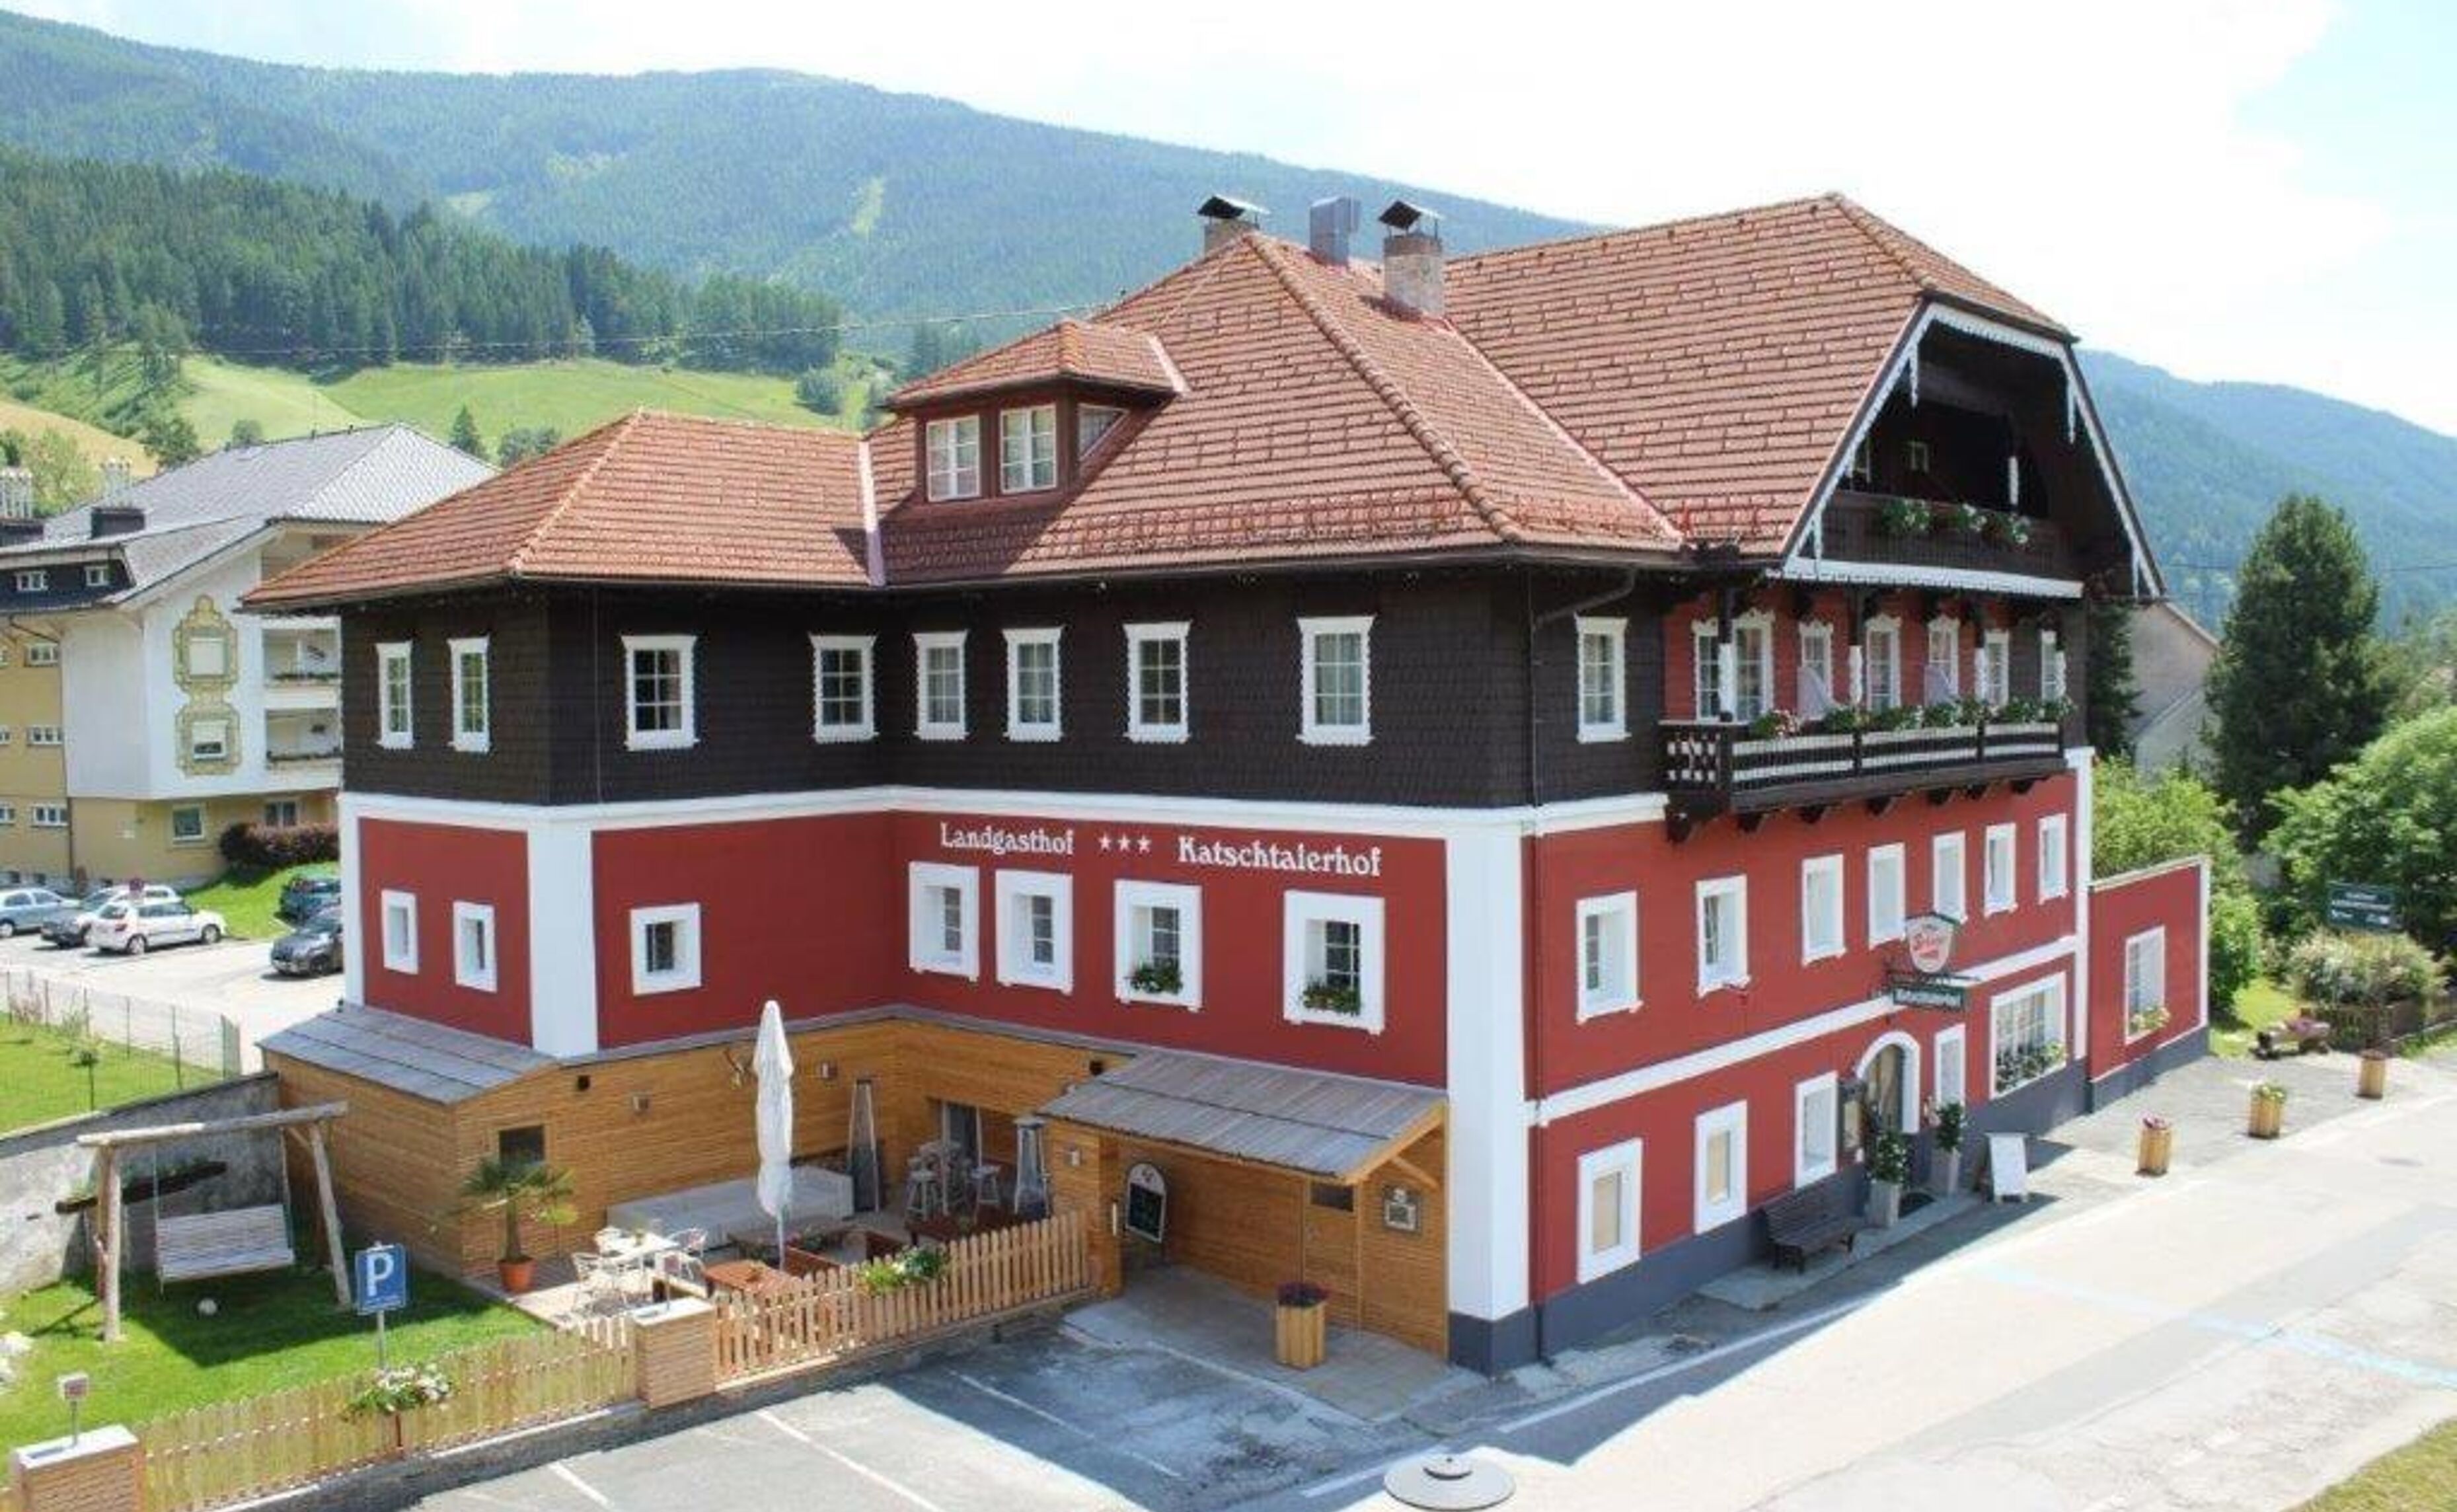 Katschtalerhof